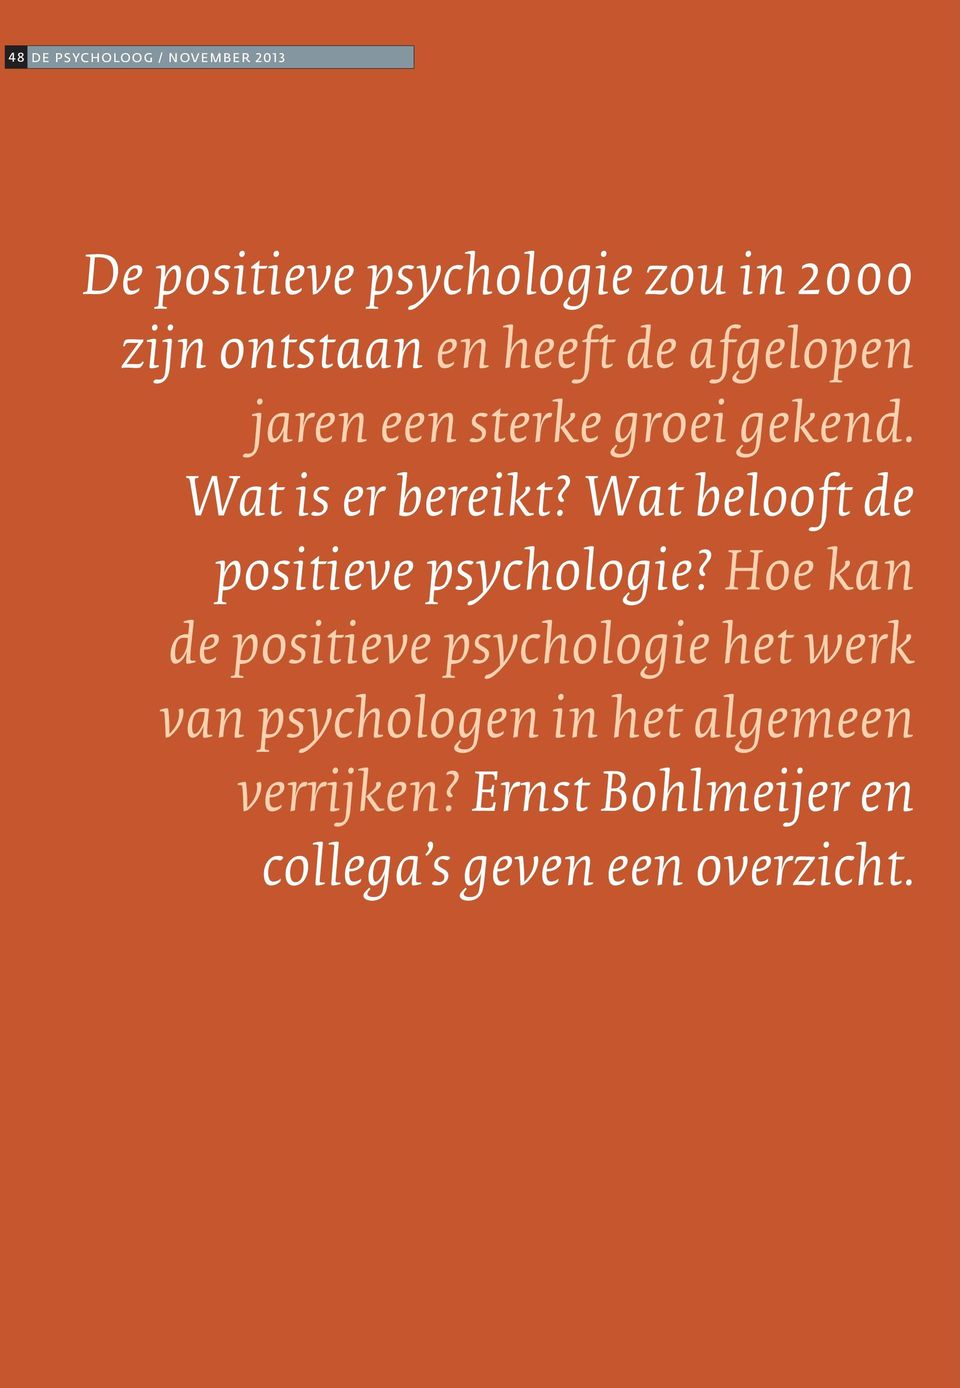 Wat belooft de positieve psychologie?